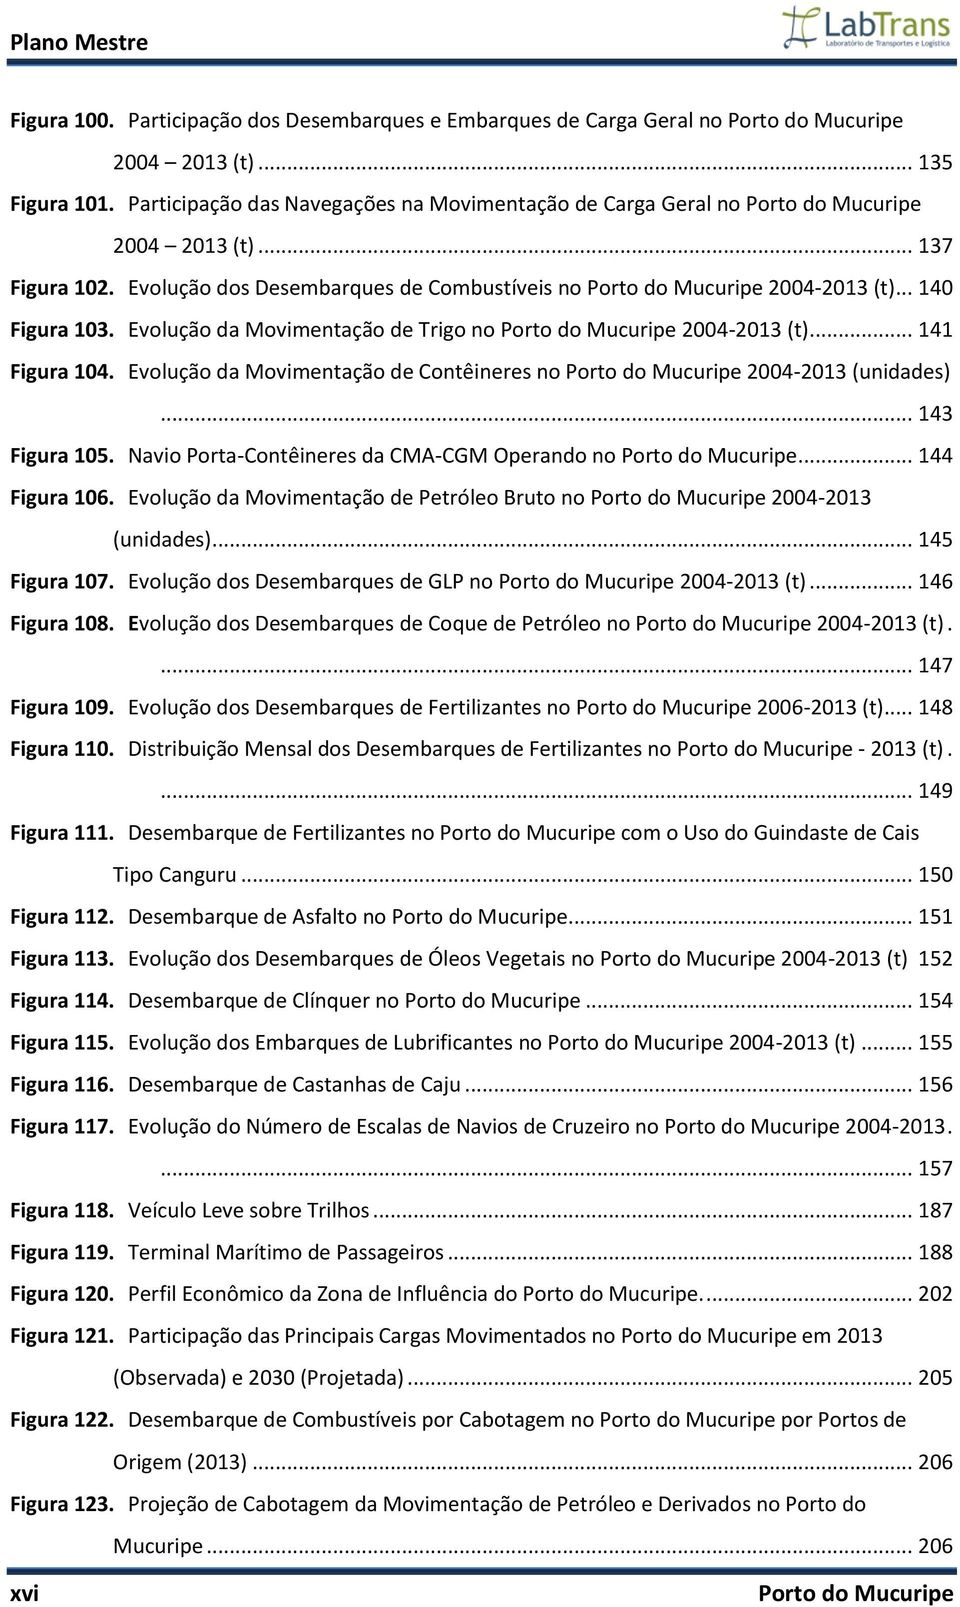 .. 140 Figura 103. Evolução da Movimentação de Trigo no Porto do Mucuripe 2004-2013 (t)... 141 Figura 104. Evolução da Movimentação de Contêineres no Porto do Mucuripe 2004-2013 (unidades).